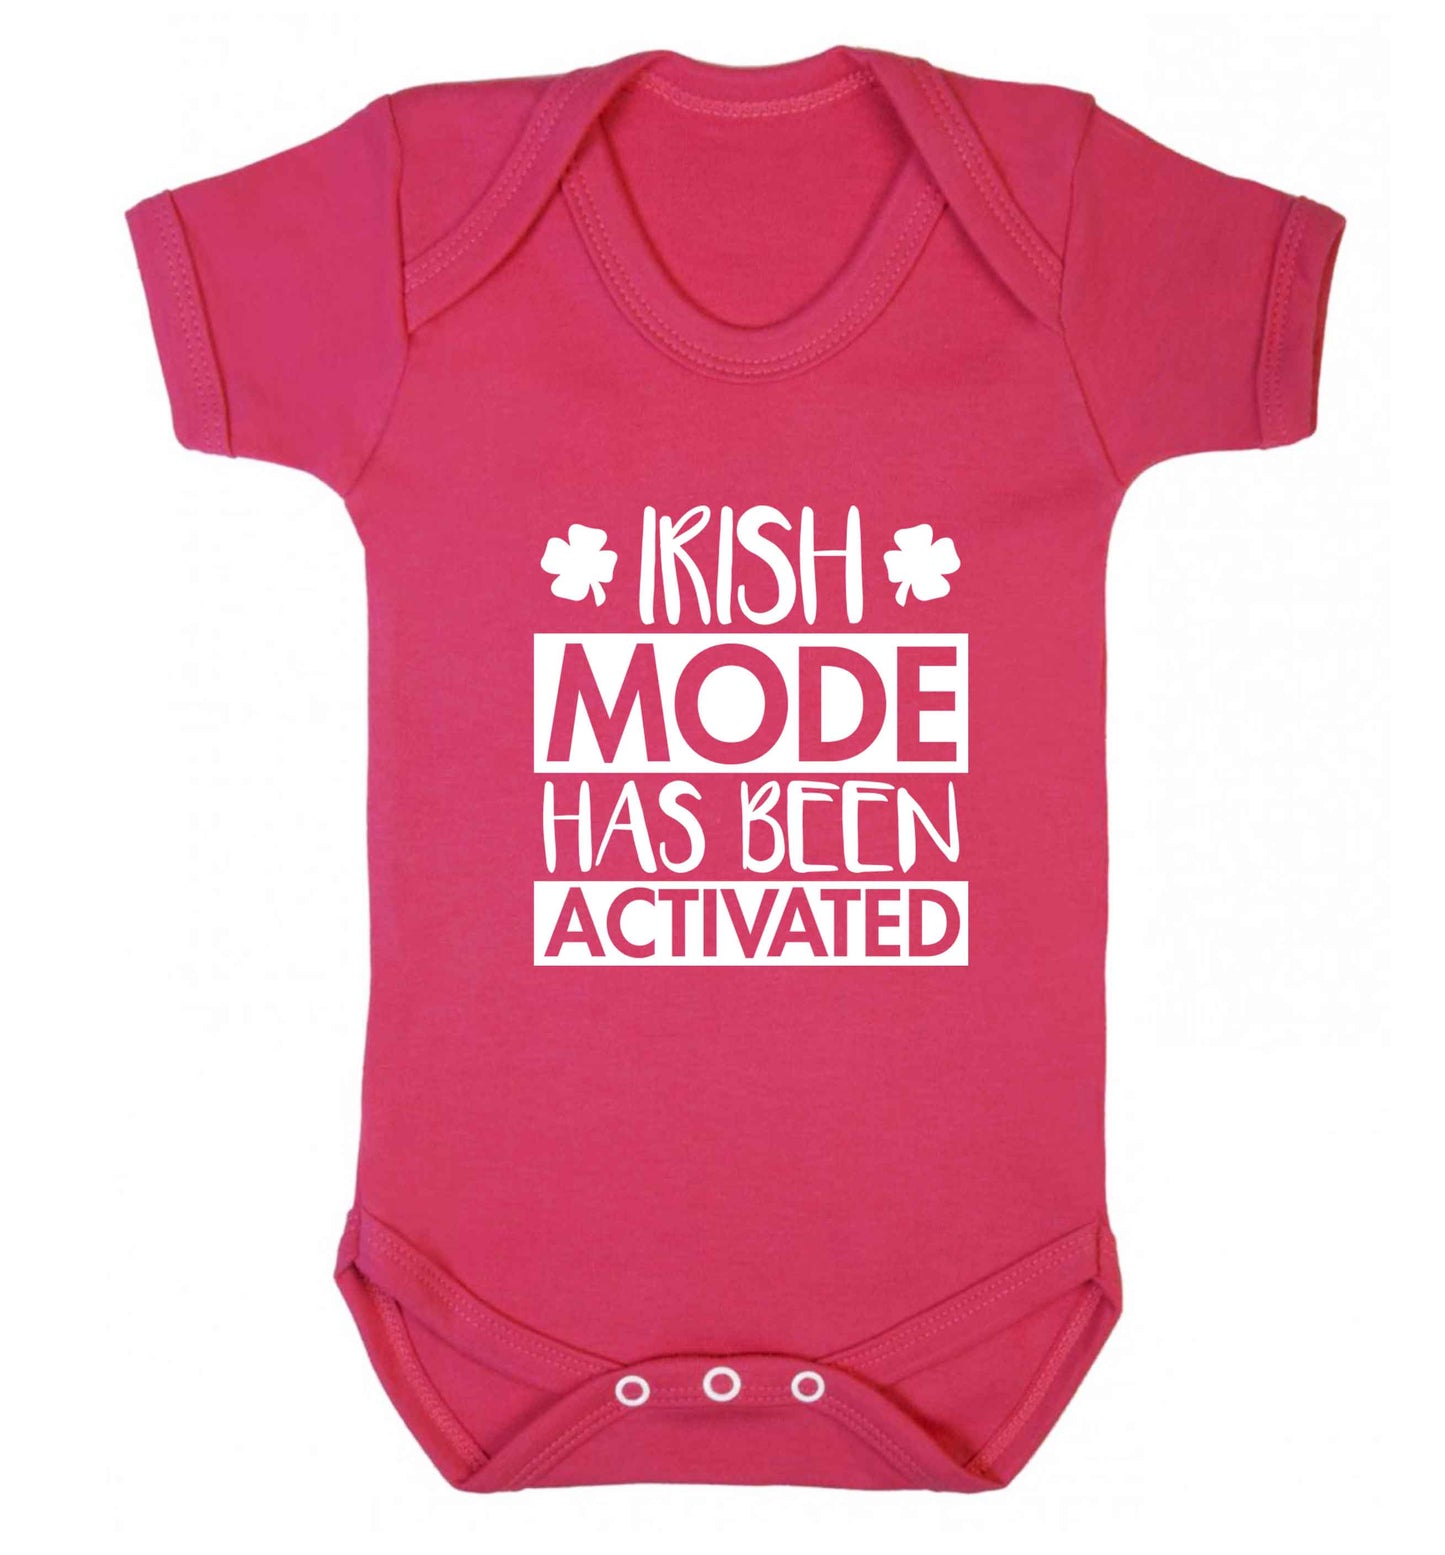 Irish mode has been activated baby vest dark pink 18-24 months